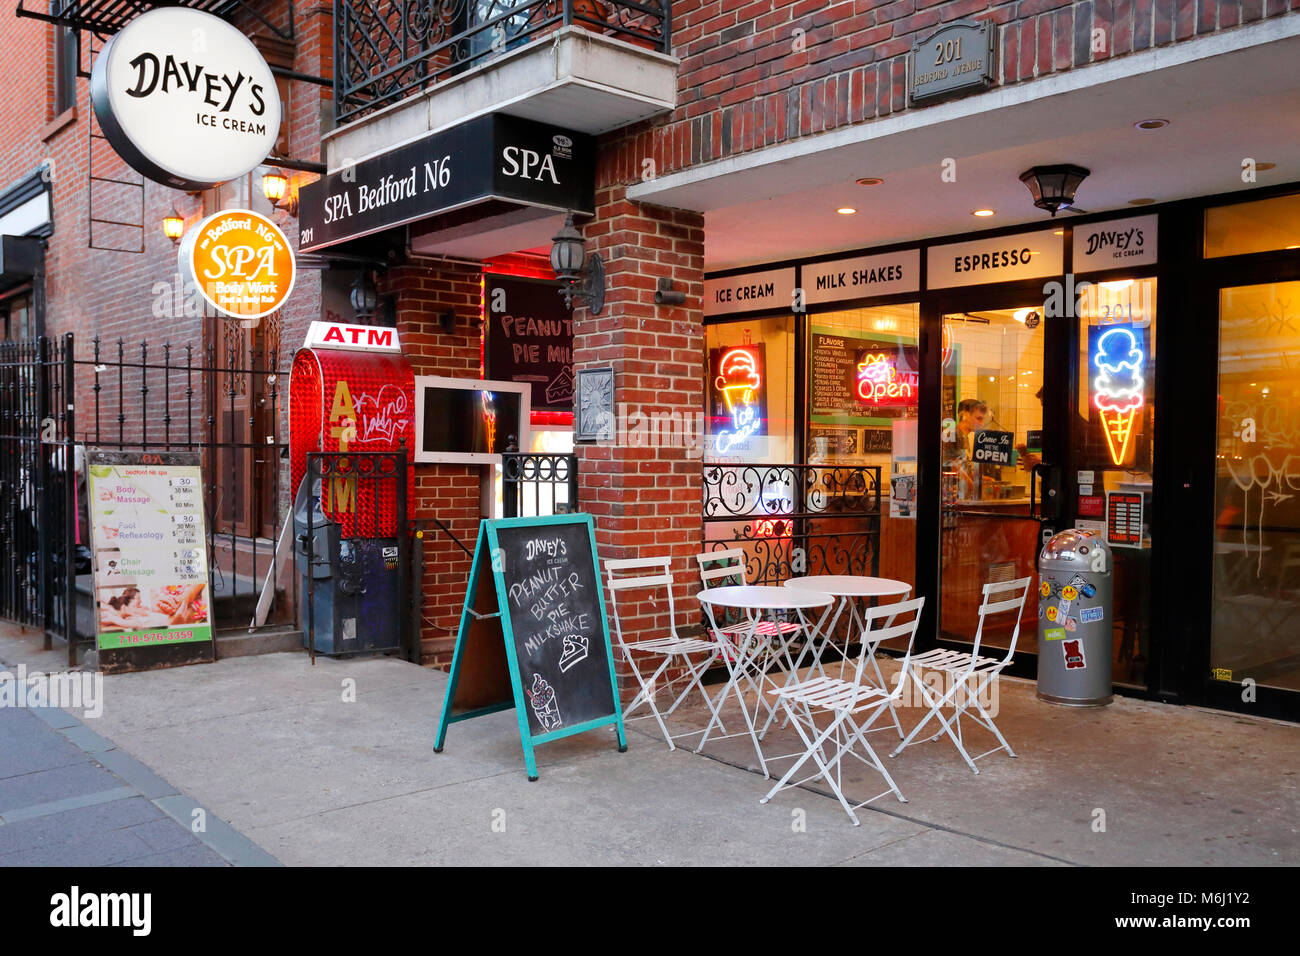 [Historisches Schaufenster] Davey's Ice Cream, 201 Bedford Ave, Brooklyn, NY. Außenfassade einer Eisdiele im Stadtteil Williamsburg Stockfoto